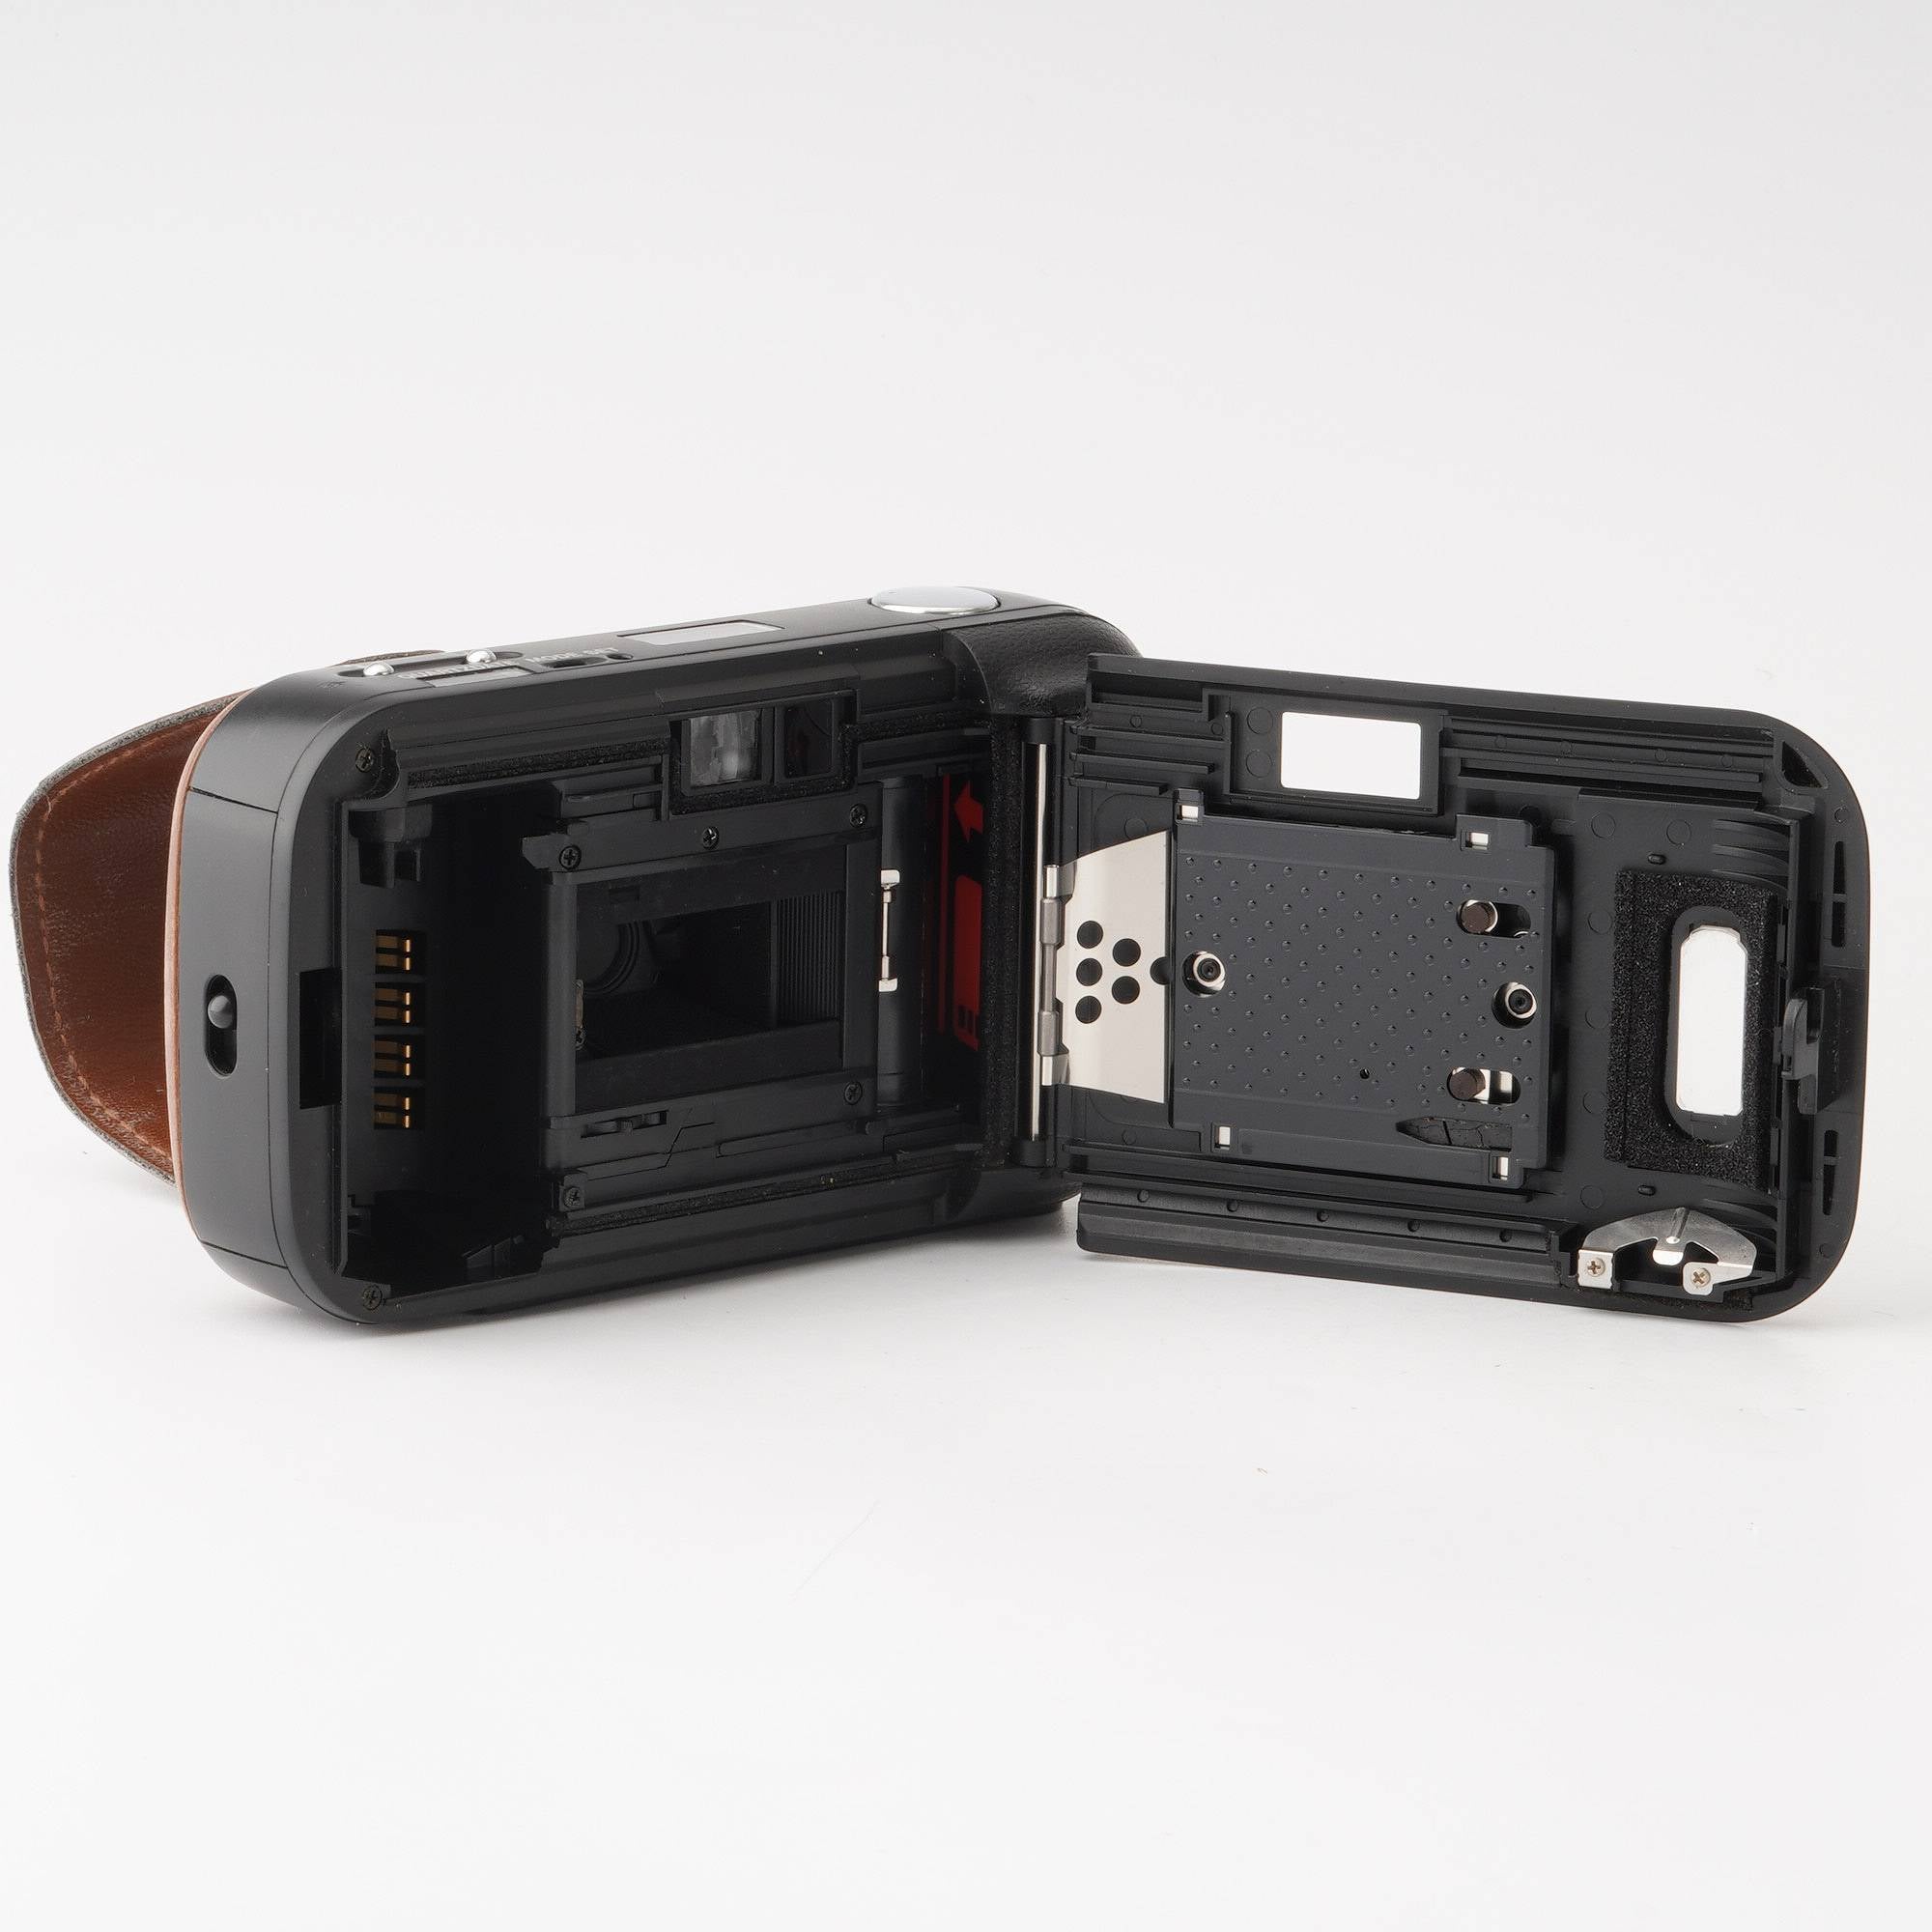 オリンパス Olympus LT-1 / 35mm F3.5 – Natural Camera / ナチュラル